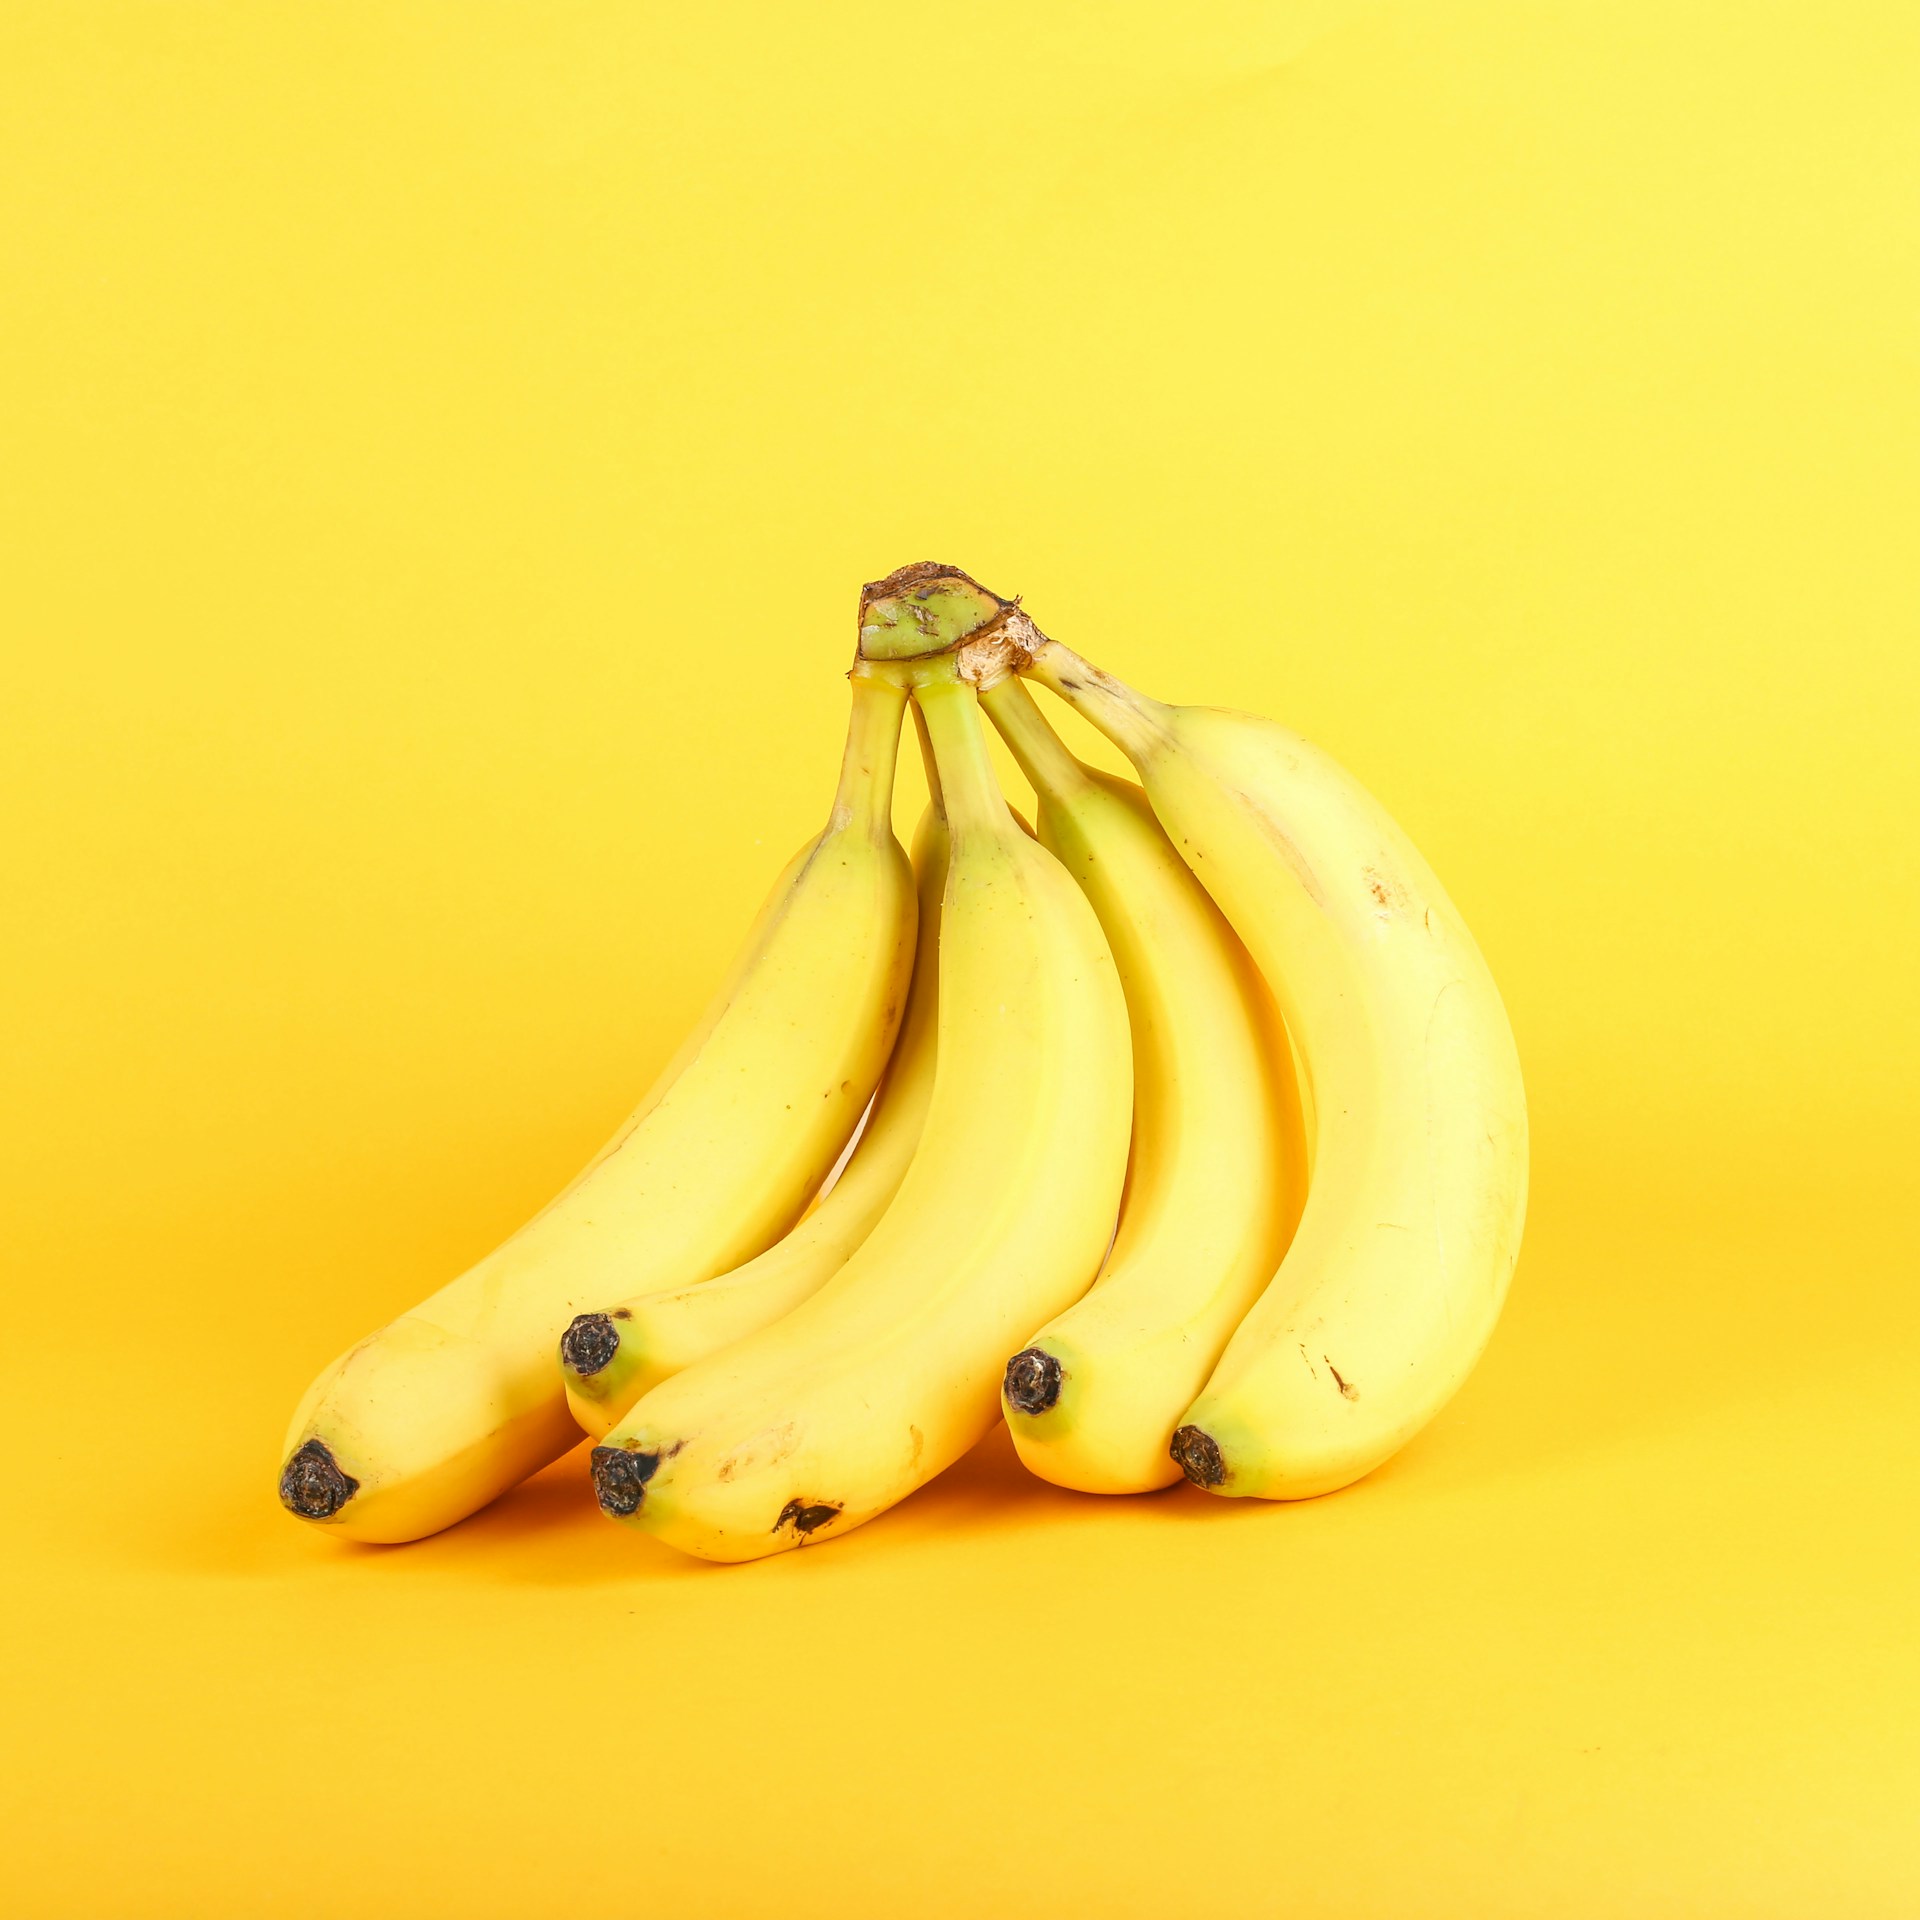 Una banana al giorno, ecco cosa succede al tuo corpo